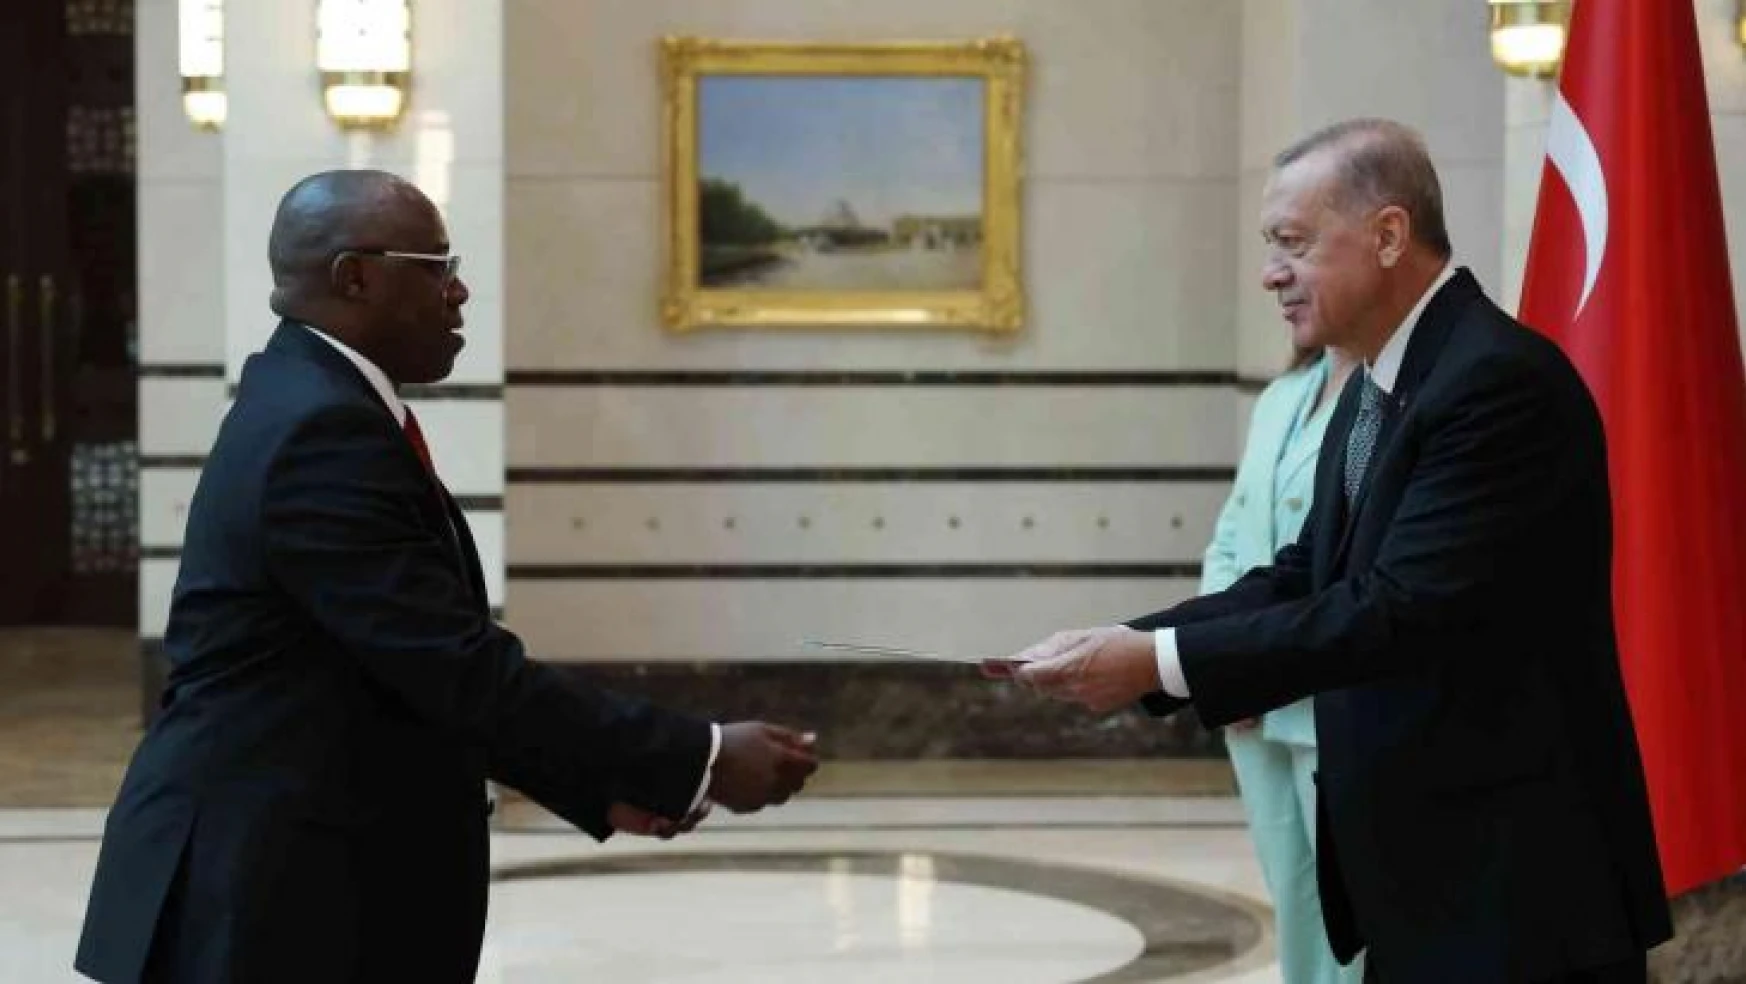 Cumhurbaşkanı Erdoğan, Kenya Büyükelçisi Boiyo'yu kabul etti